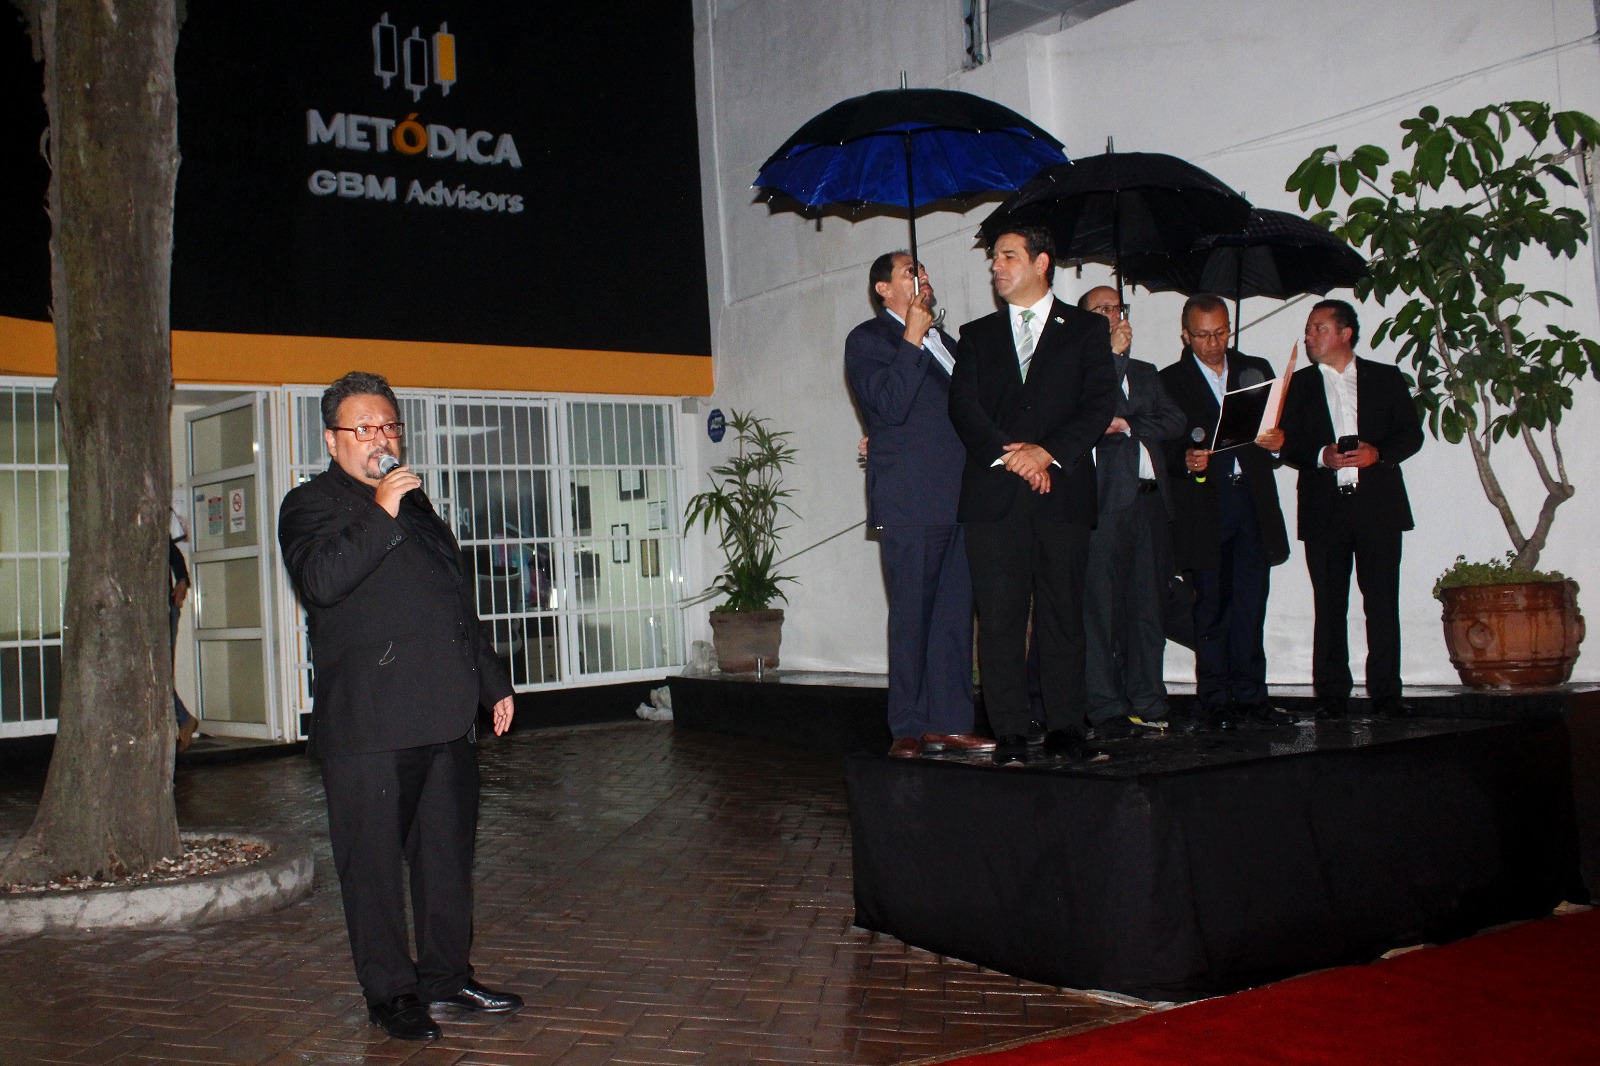 Reconocidos empresarios inauguraron en Puebla “Metódica GBM”.